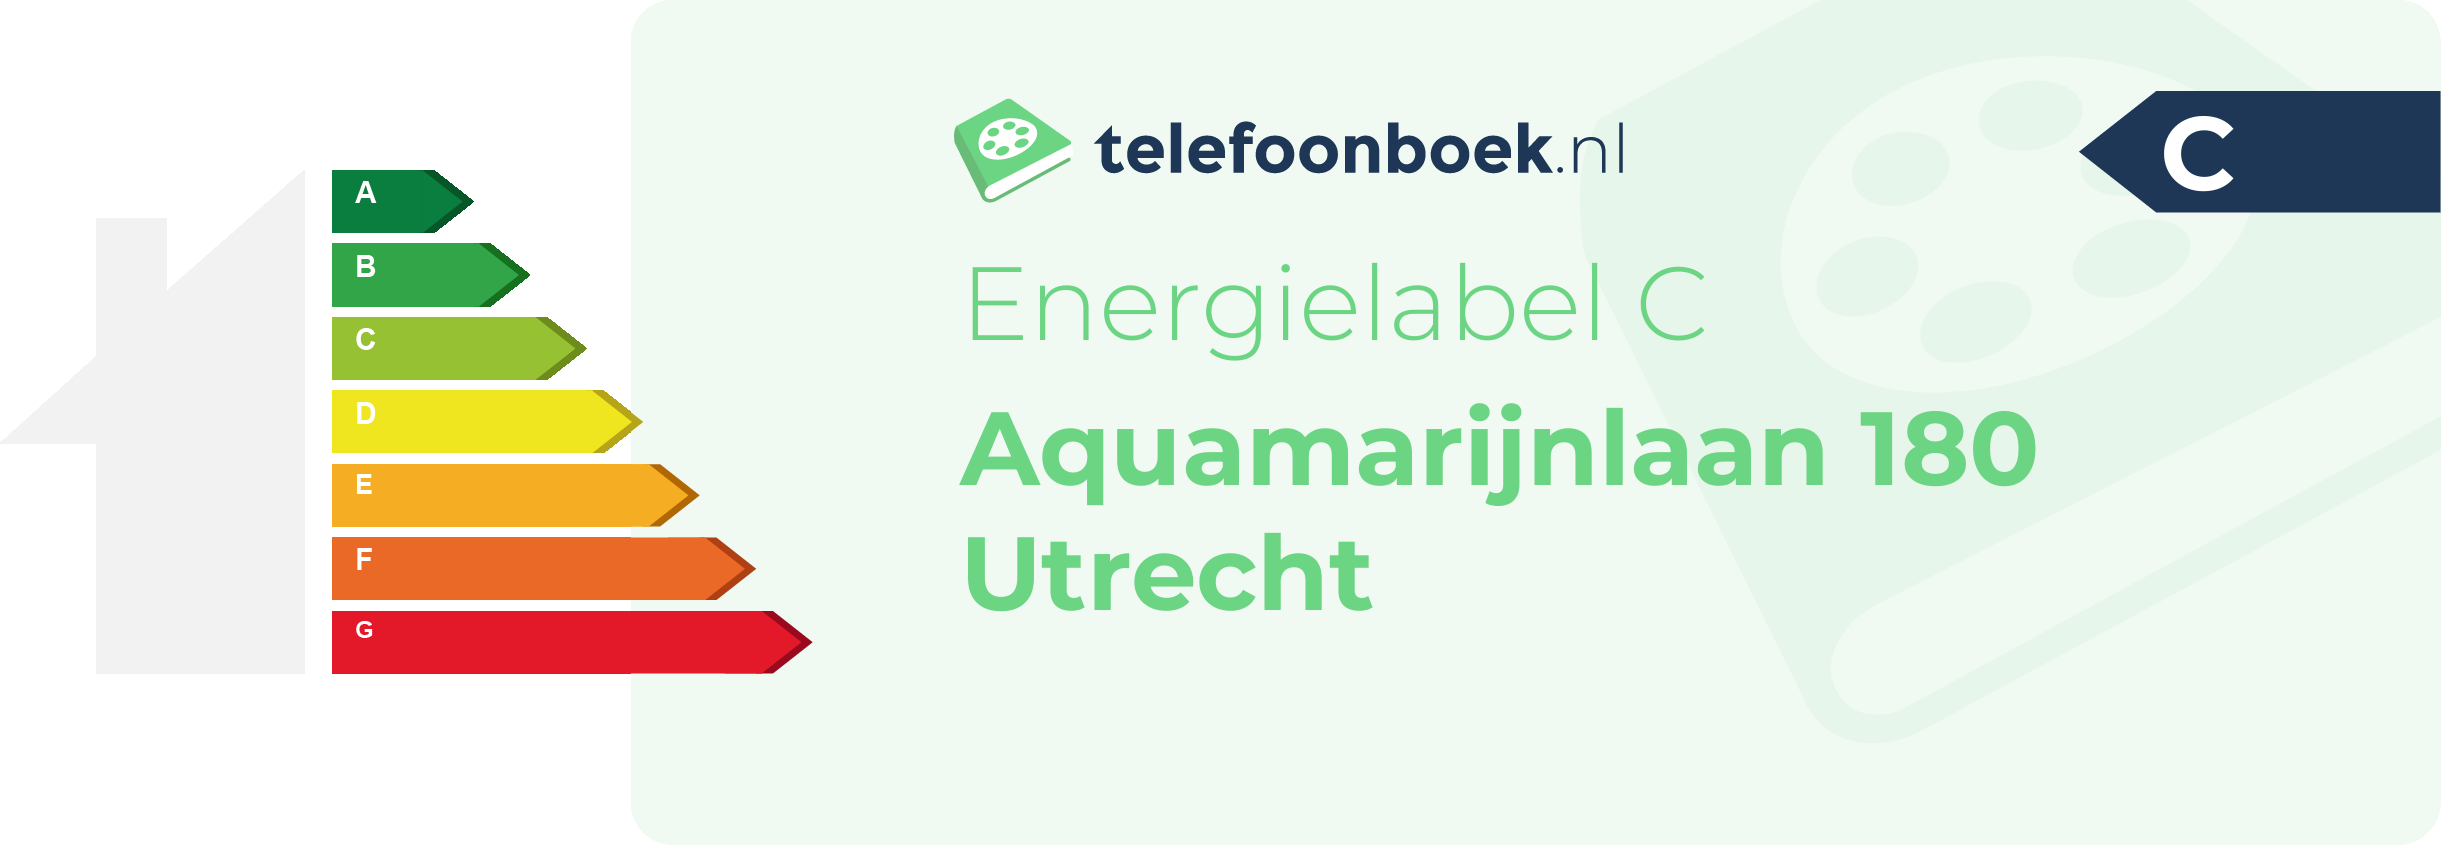 Energielabel Aquamarijnlaan 180 Utrecht